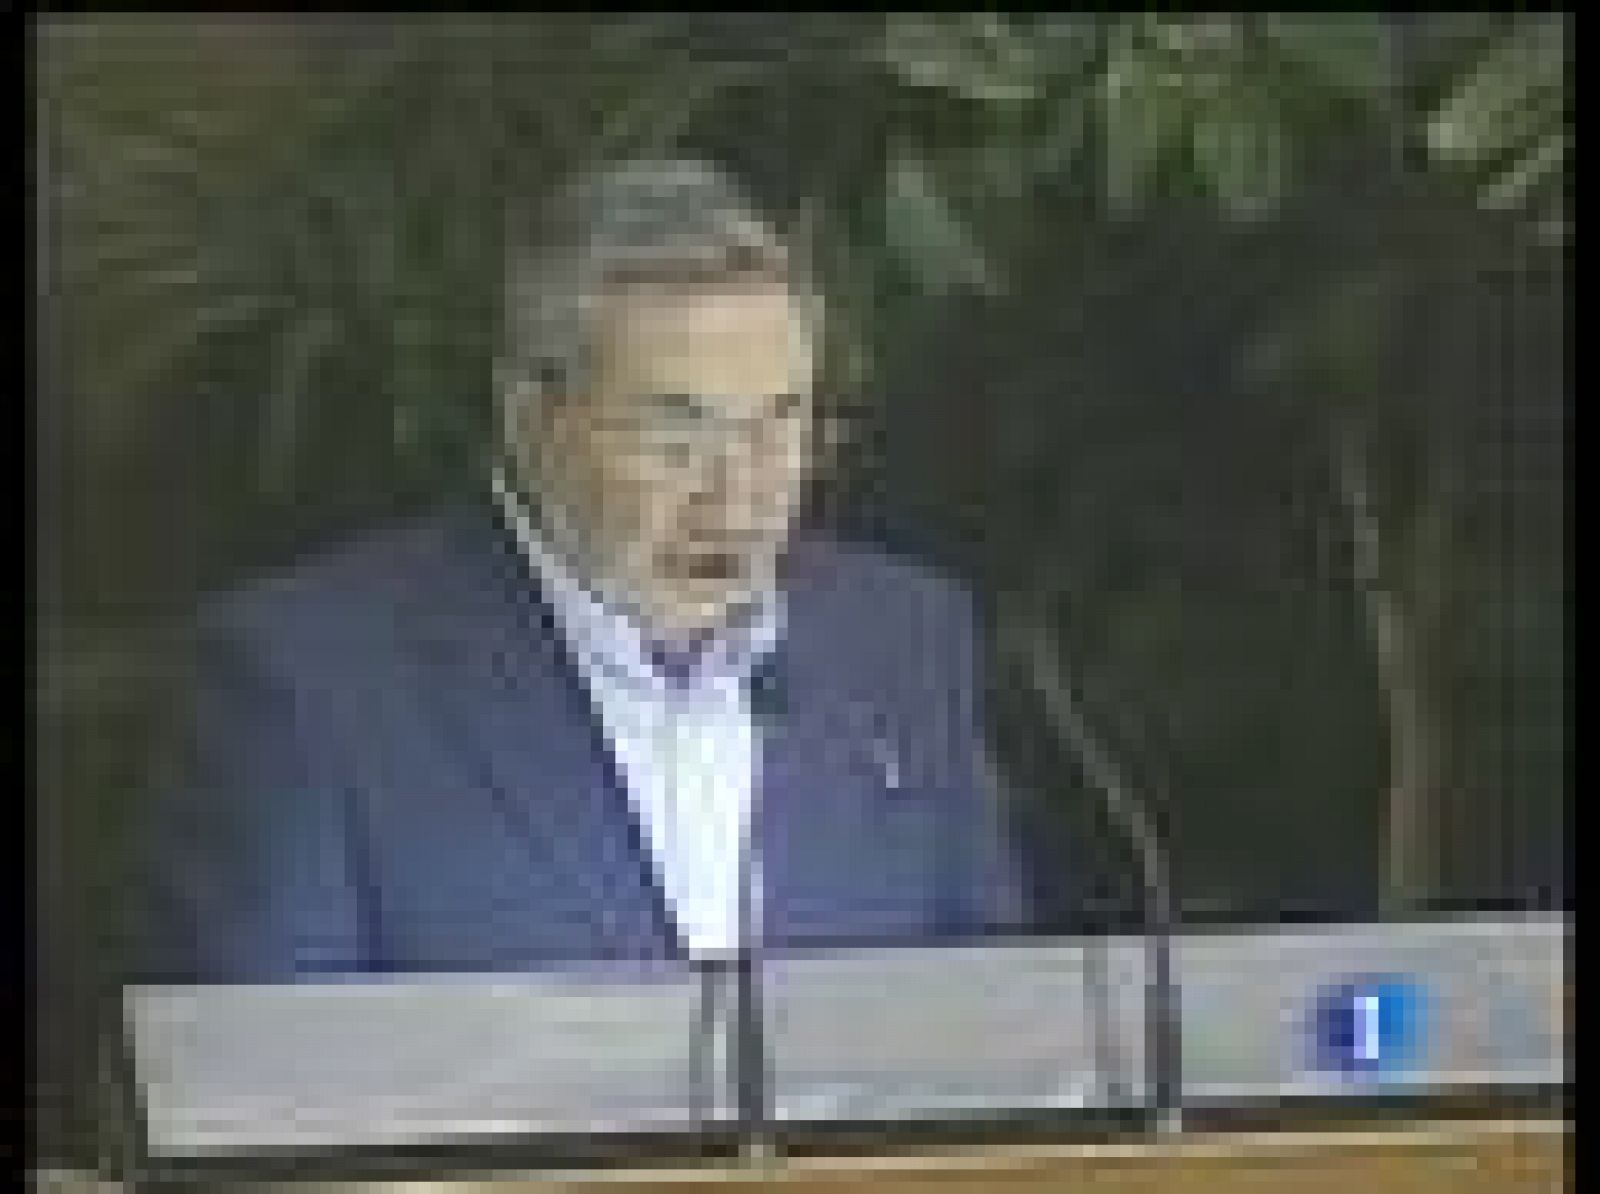 Lo ha dicho Raúl Castro en su primer discurso sobre la situación cubana desde la muerte del disidente Orlando Zapata, después de 86 días en huelga de hambre. El presidente cubano denuncia que todo se debe a una campaña internacional de descrédito.